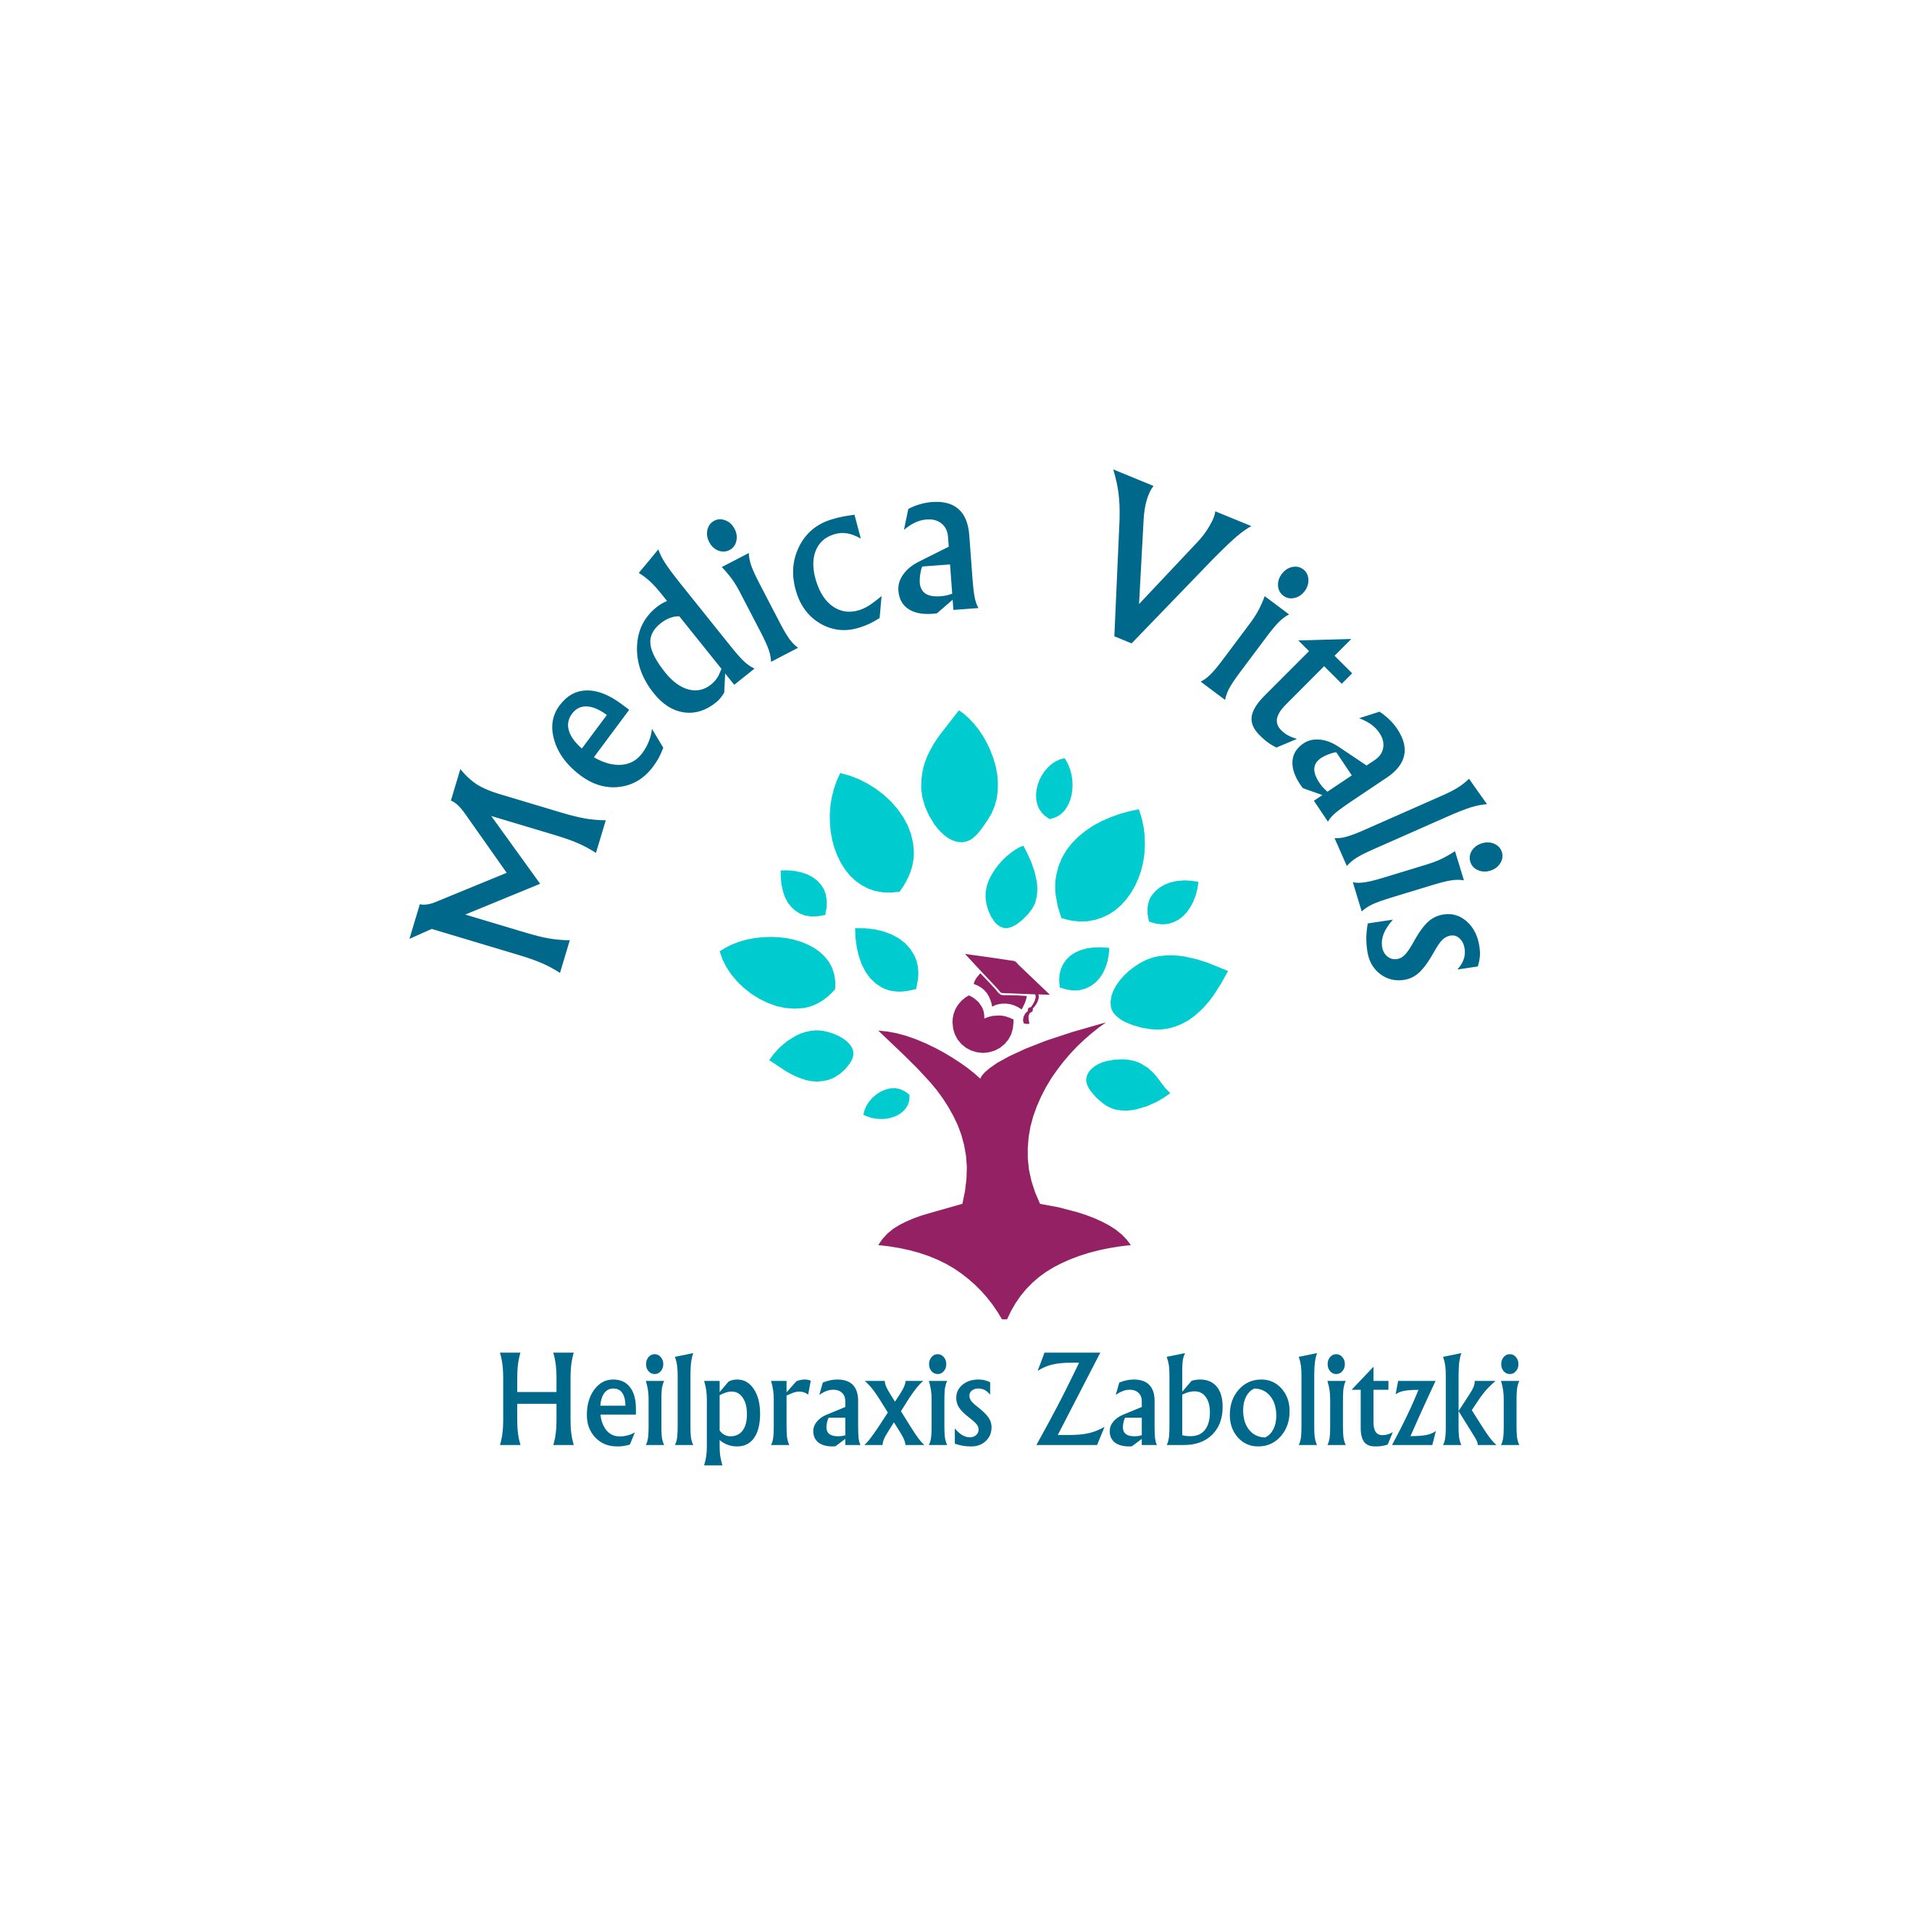 Logo Medica Vitalis - Heilpraxis Zabolitzki